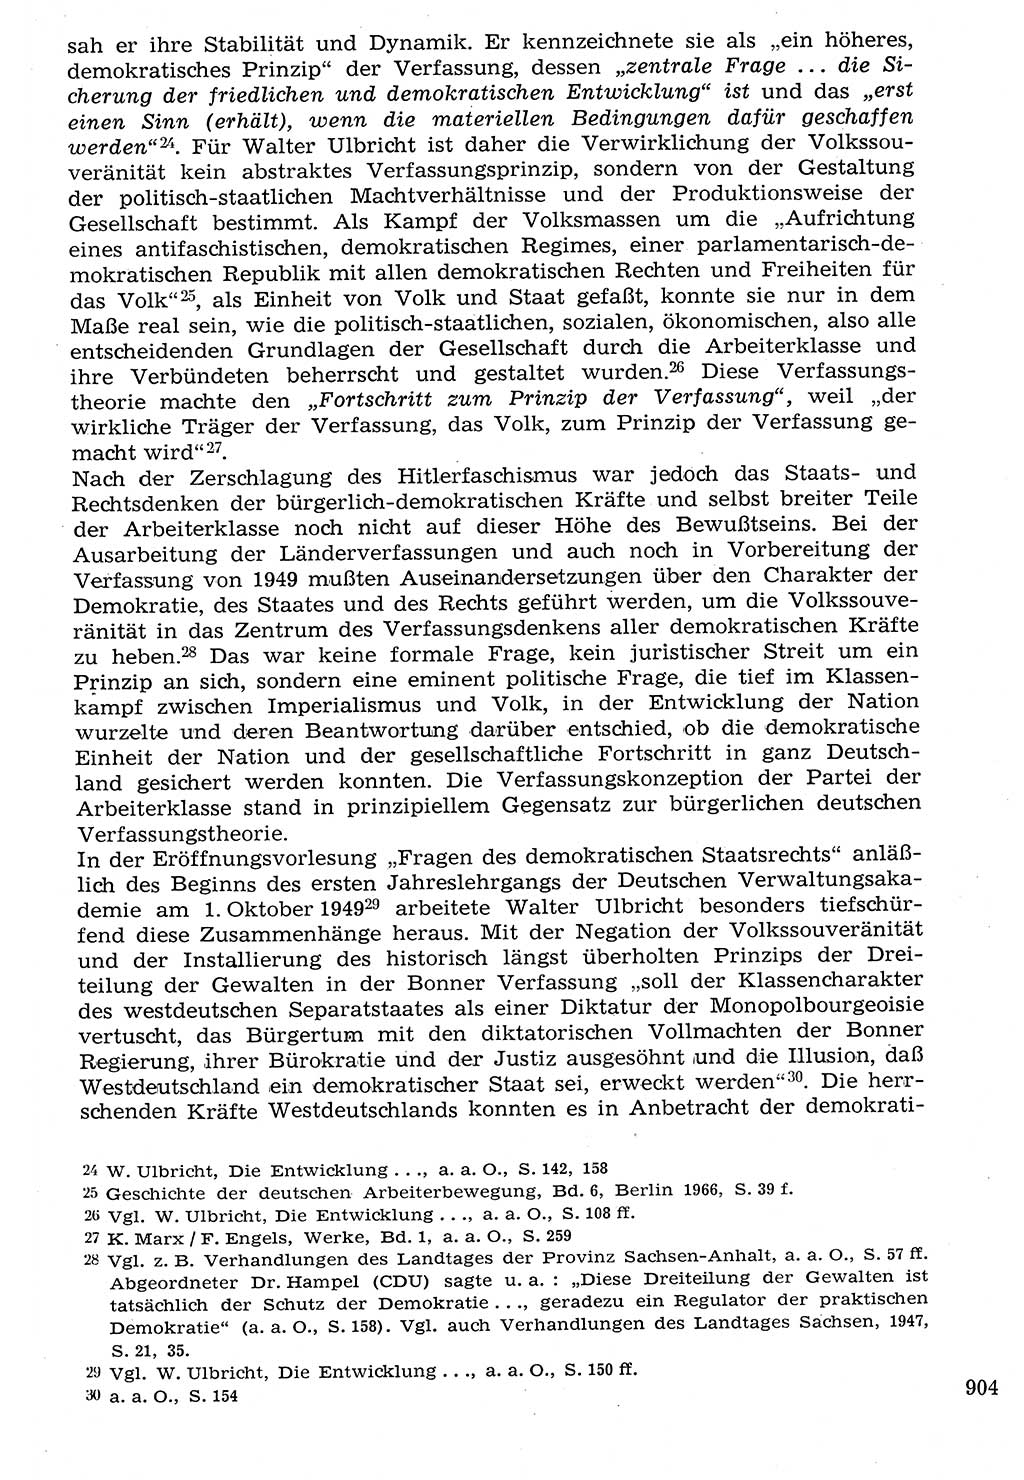 Staat und Recht (StuR), 17. Jahrgang [Deutsche Demokratische Republik (DDR)] 1968, Seite 904 (StuR DDR 1968, S. 904)